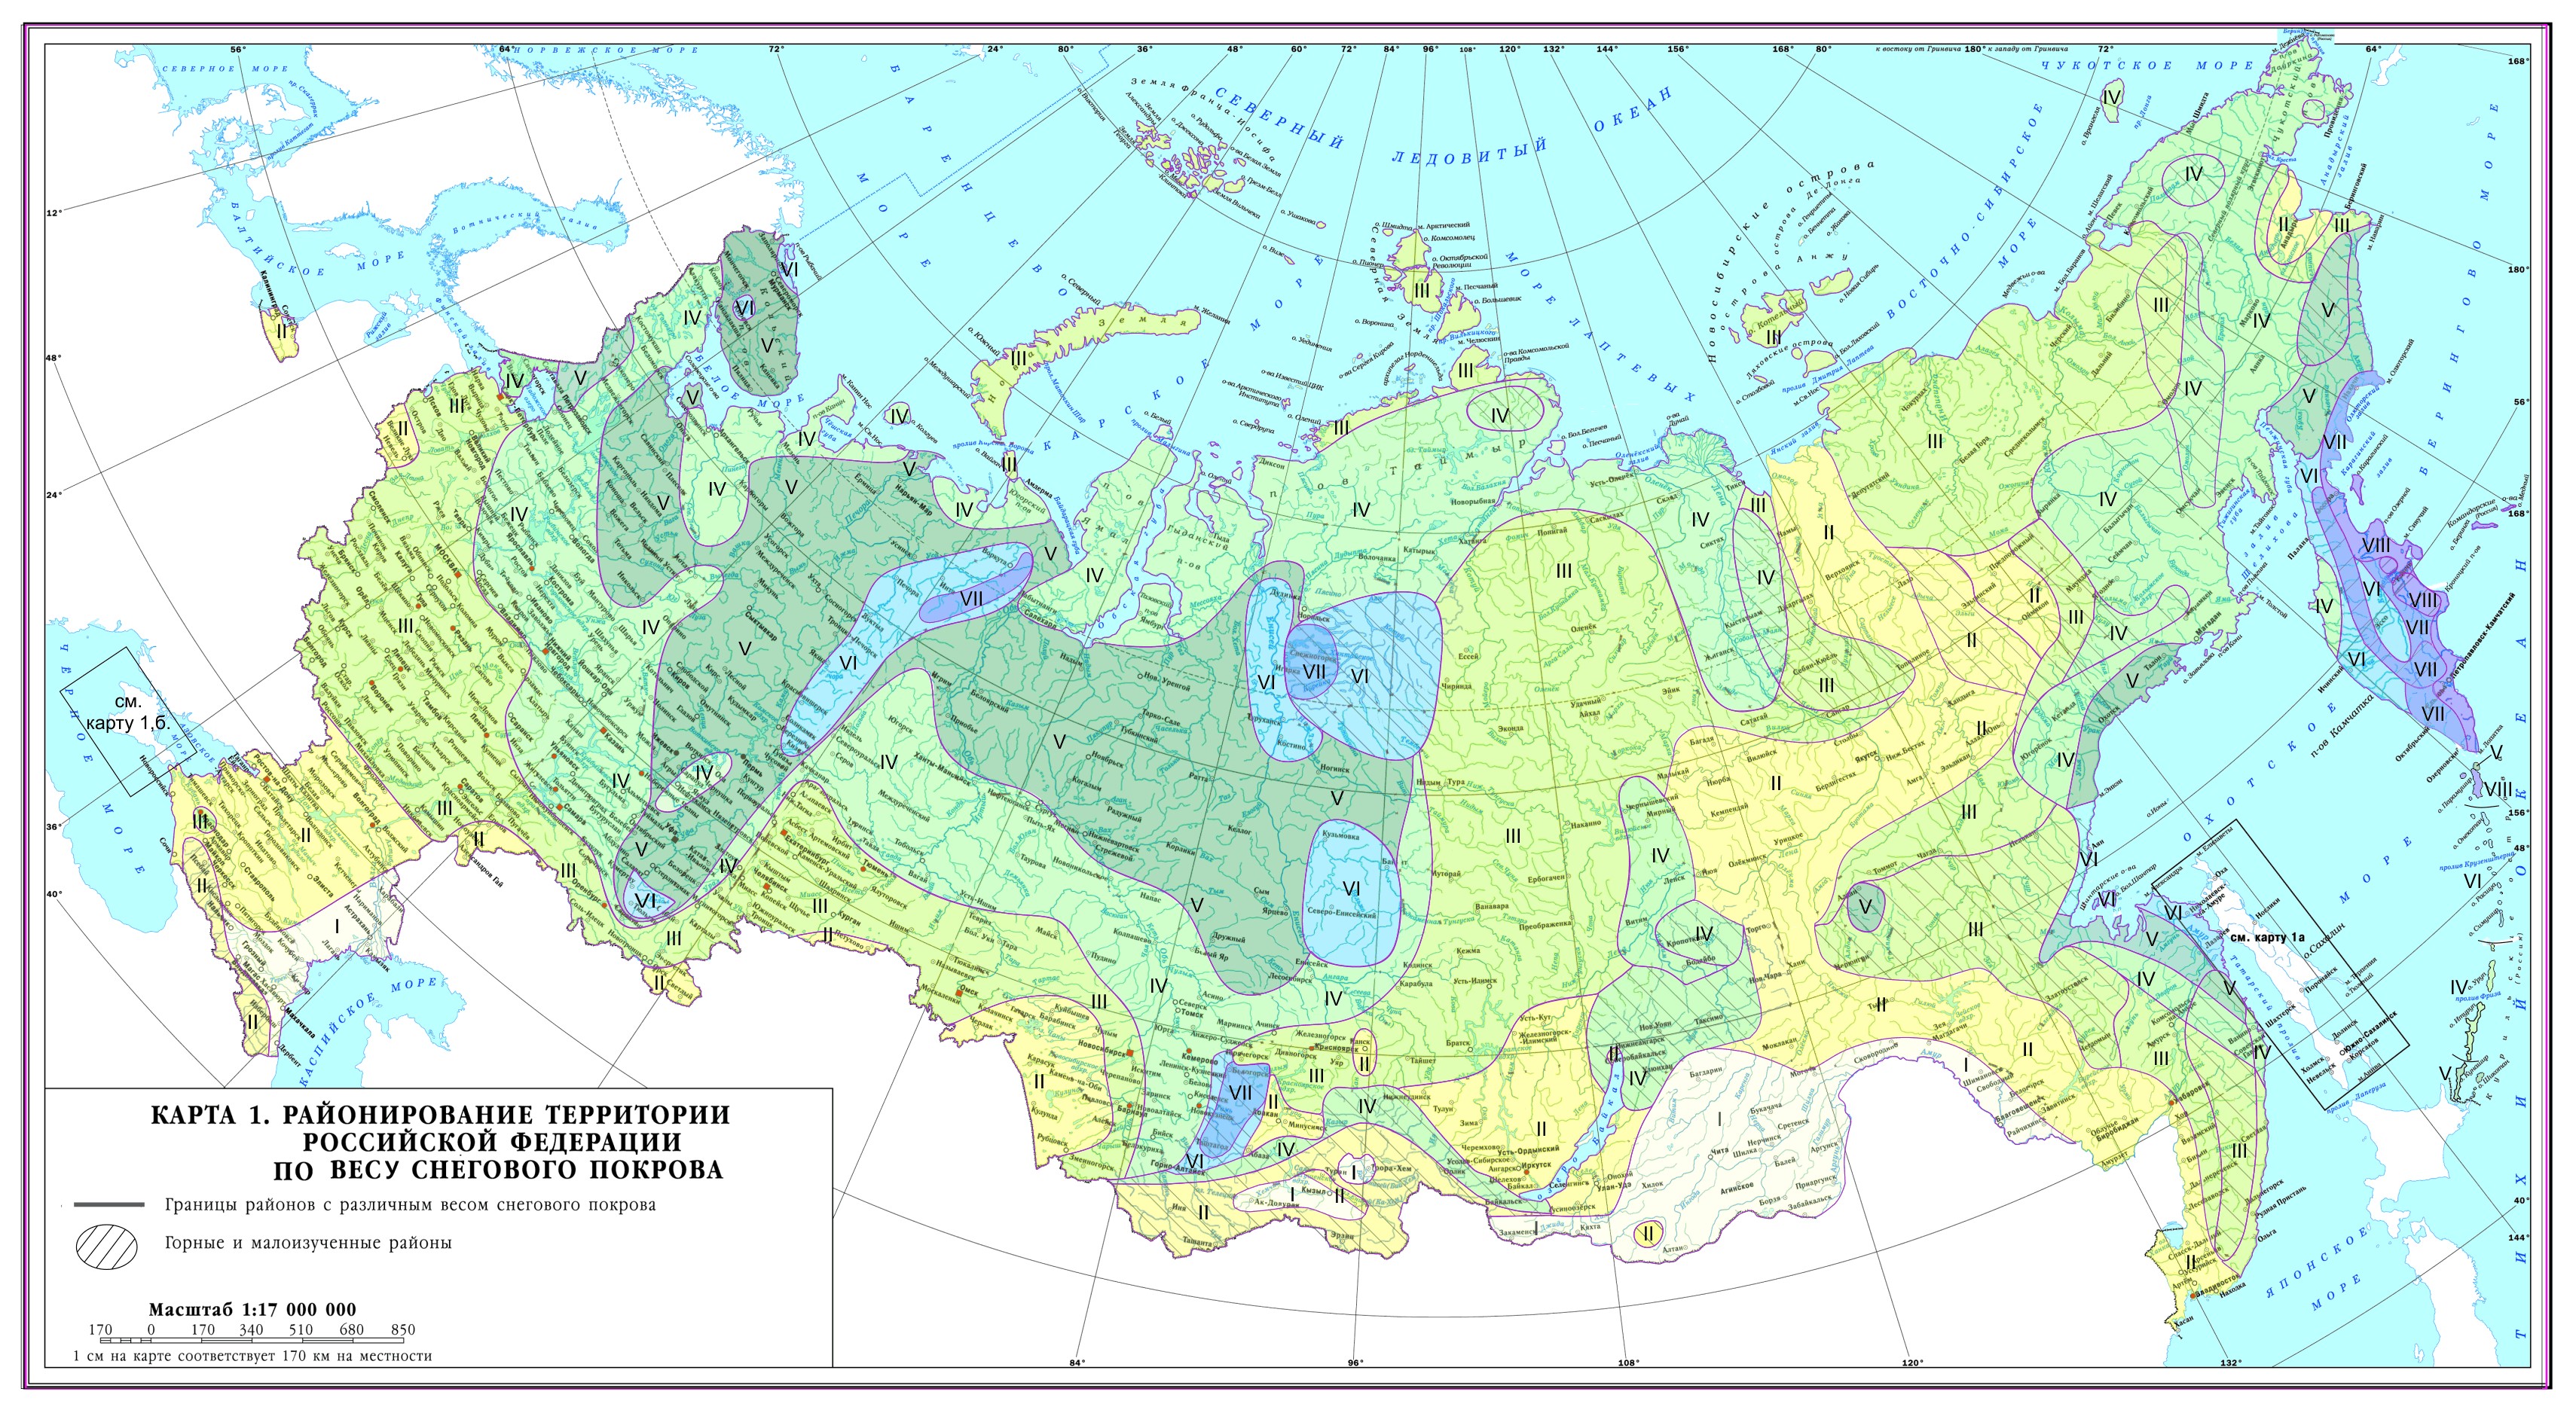 Карта сн��говых районов России